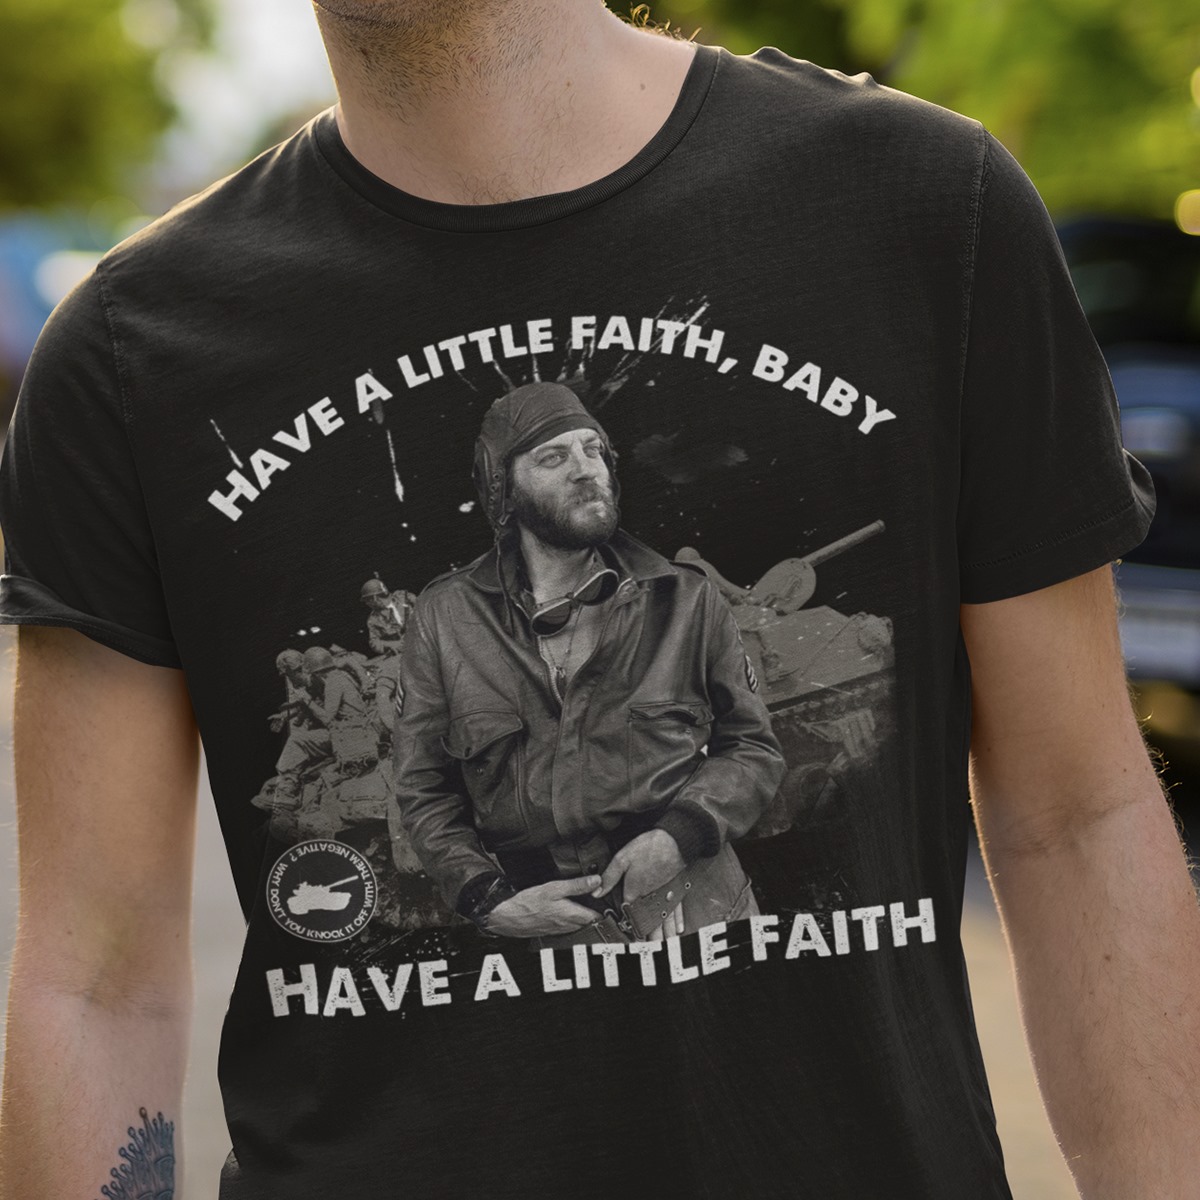 Man And Tank - Have a little faith baby have a little faith